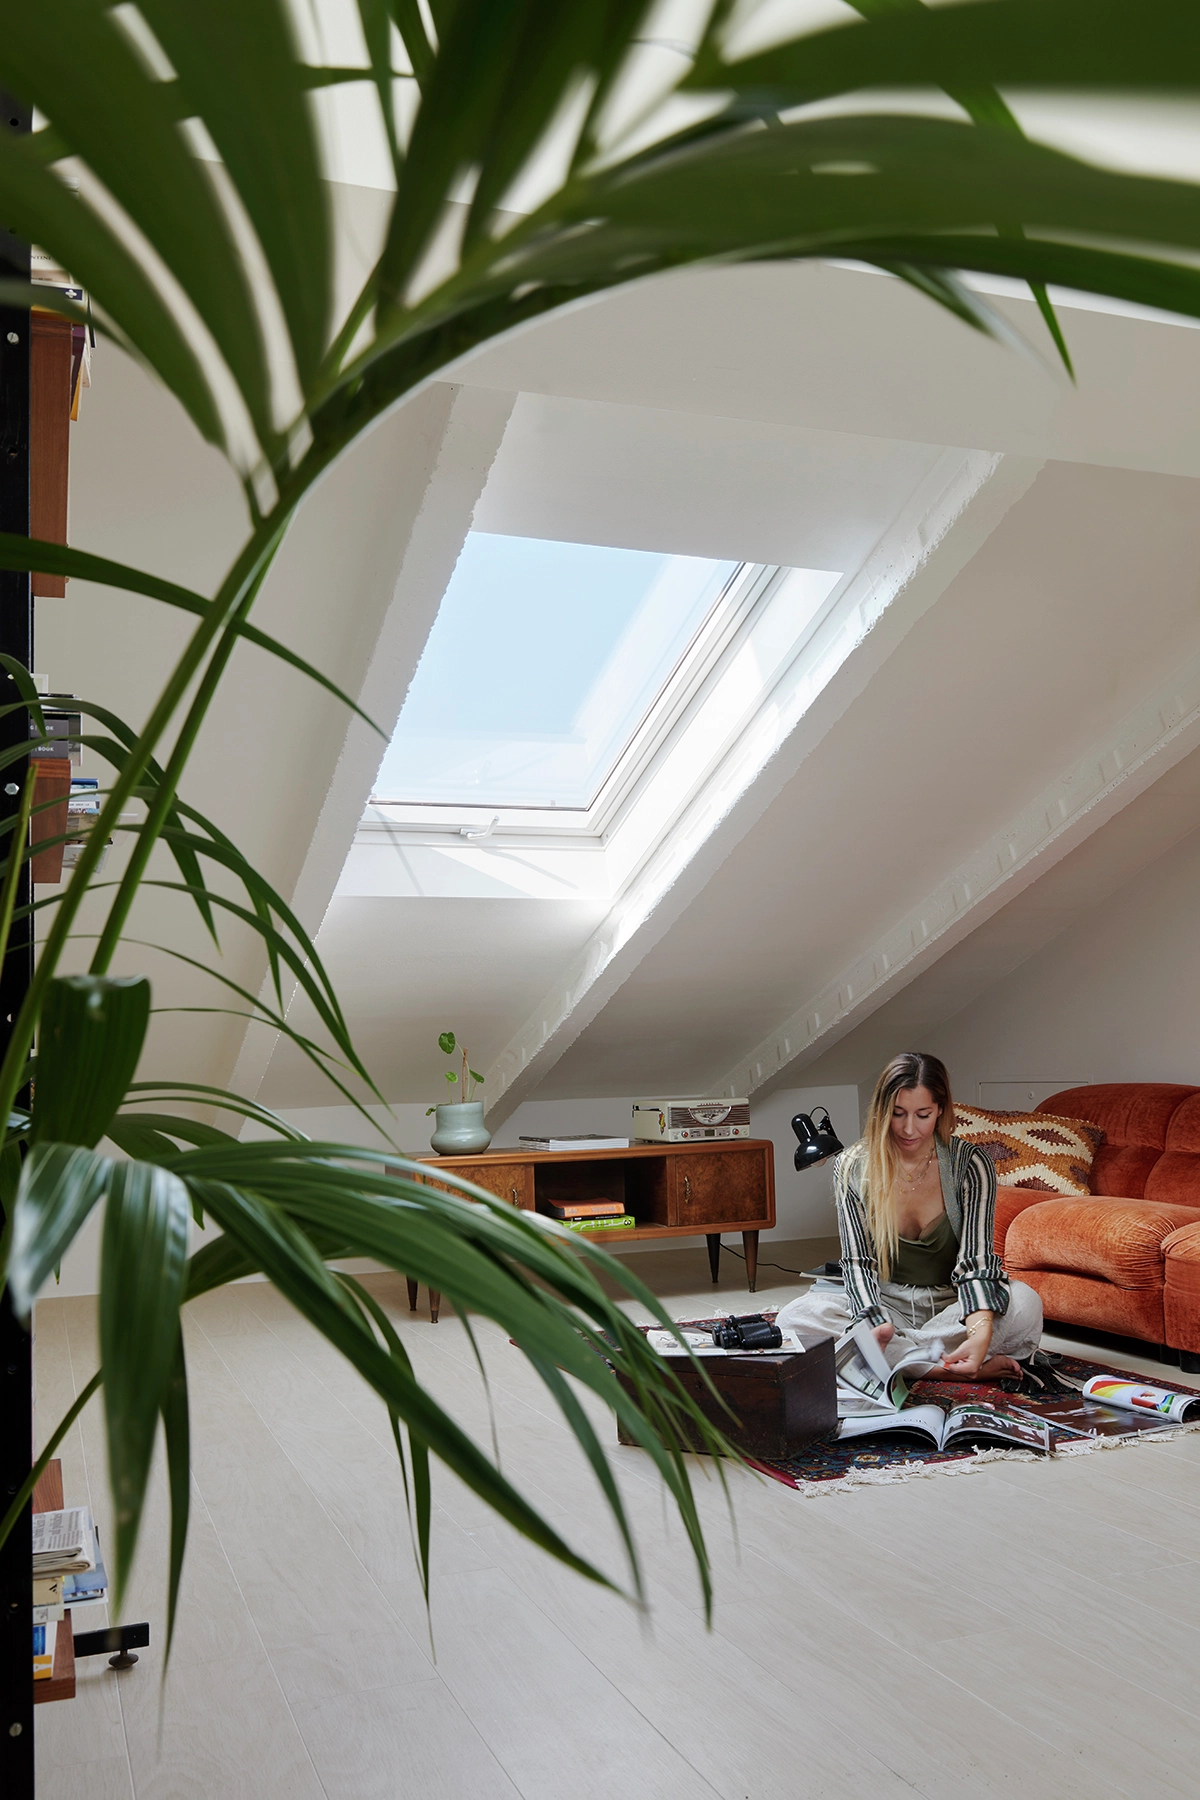 Bureau à domicile dans le comble avec fenêtre VELUX, bureau vintage et plante luxuriante.